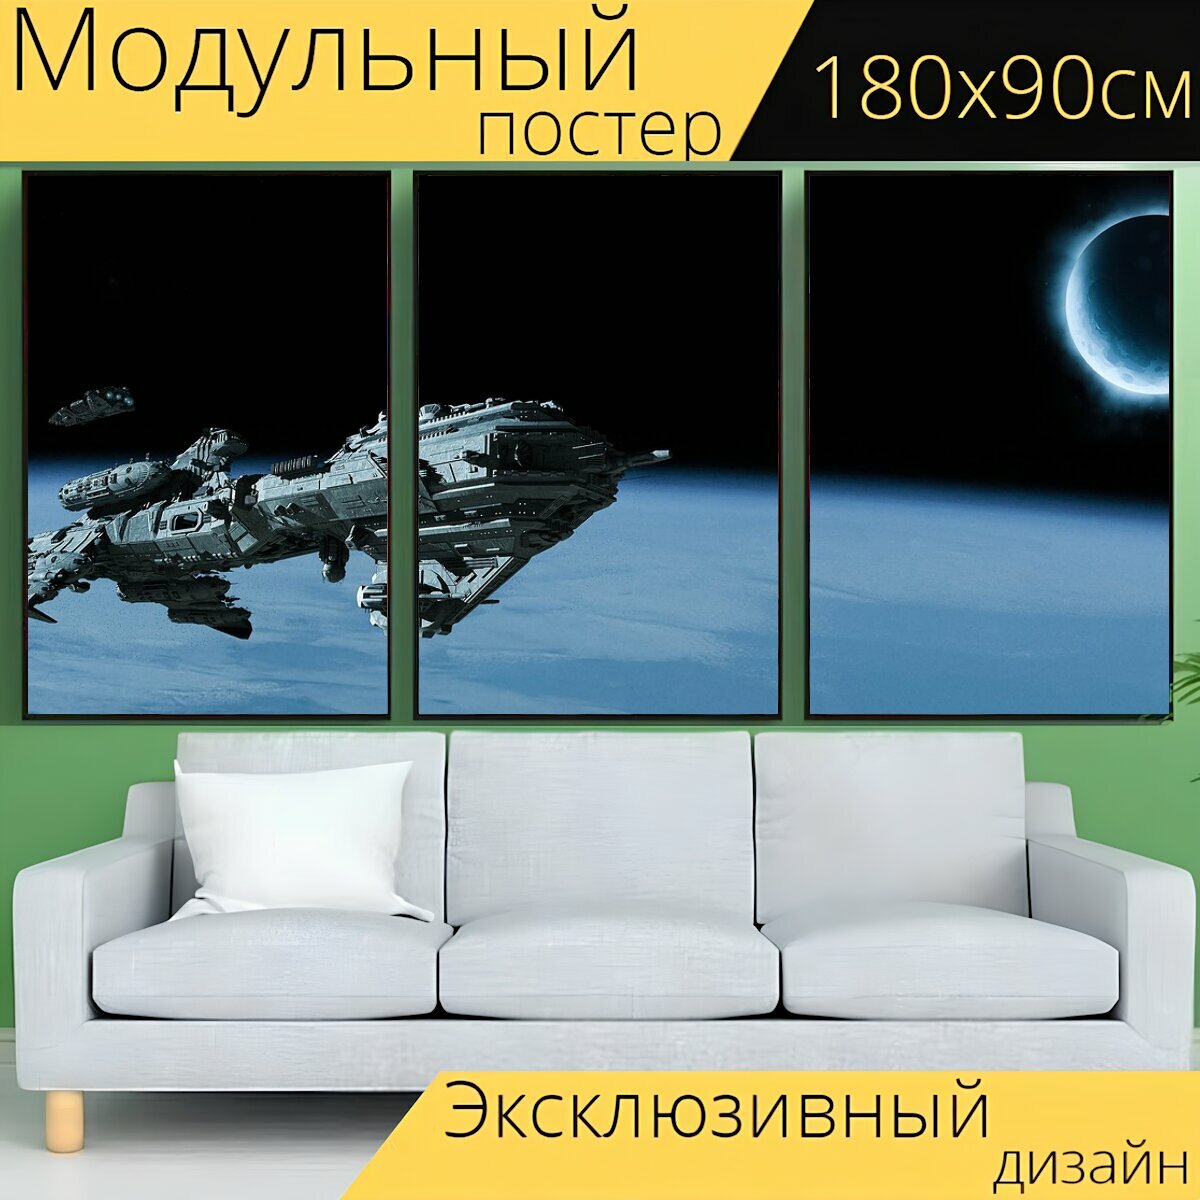 Модульный постер "Фантазия, вселенная, космический корабль" 180 x 90 см. для интерьера